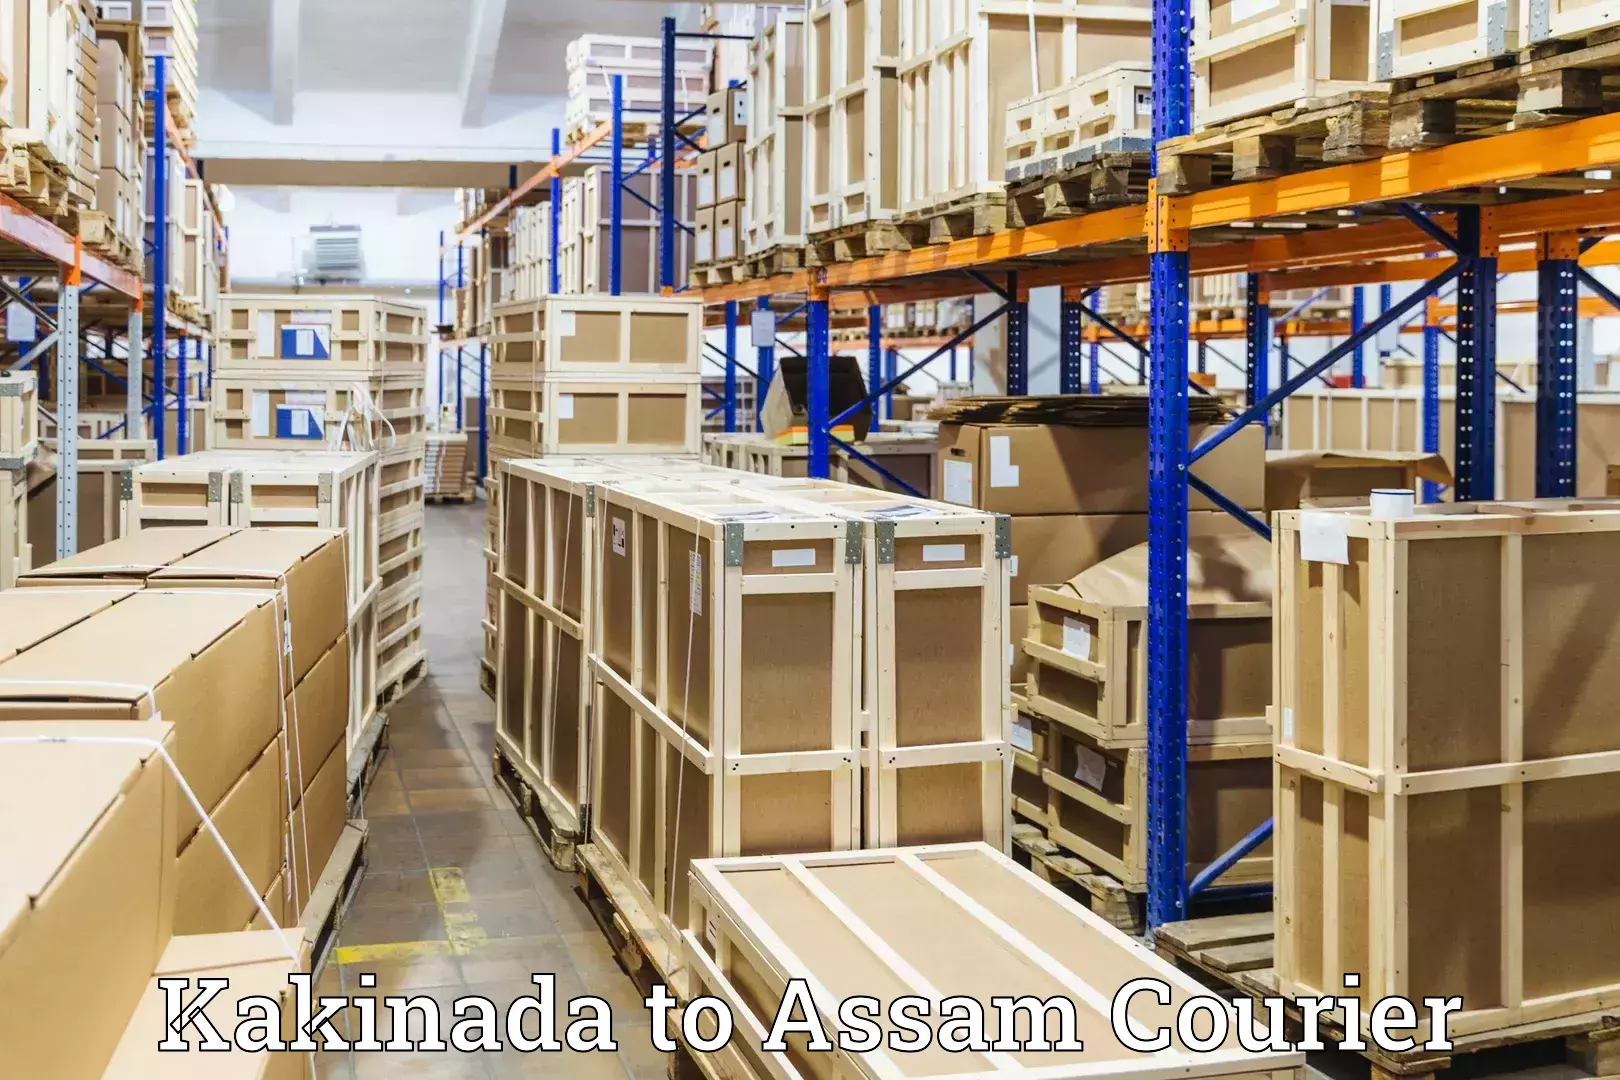 Luggage transport service Kakinada to Assam